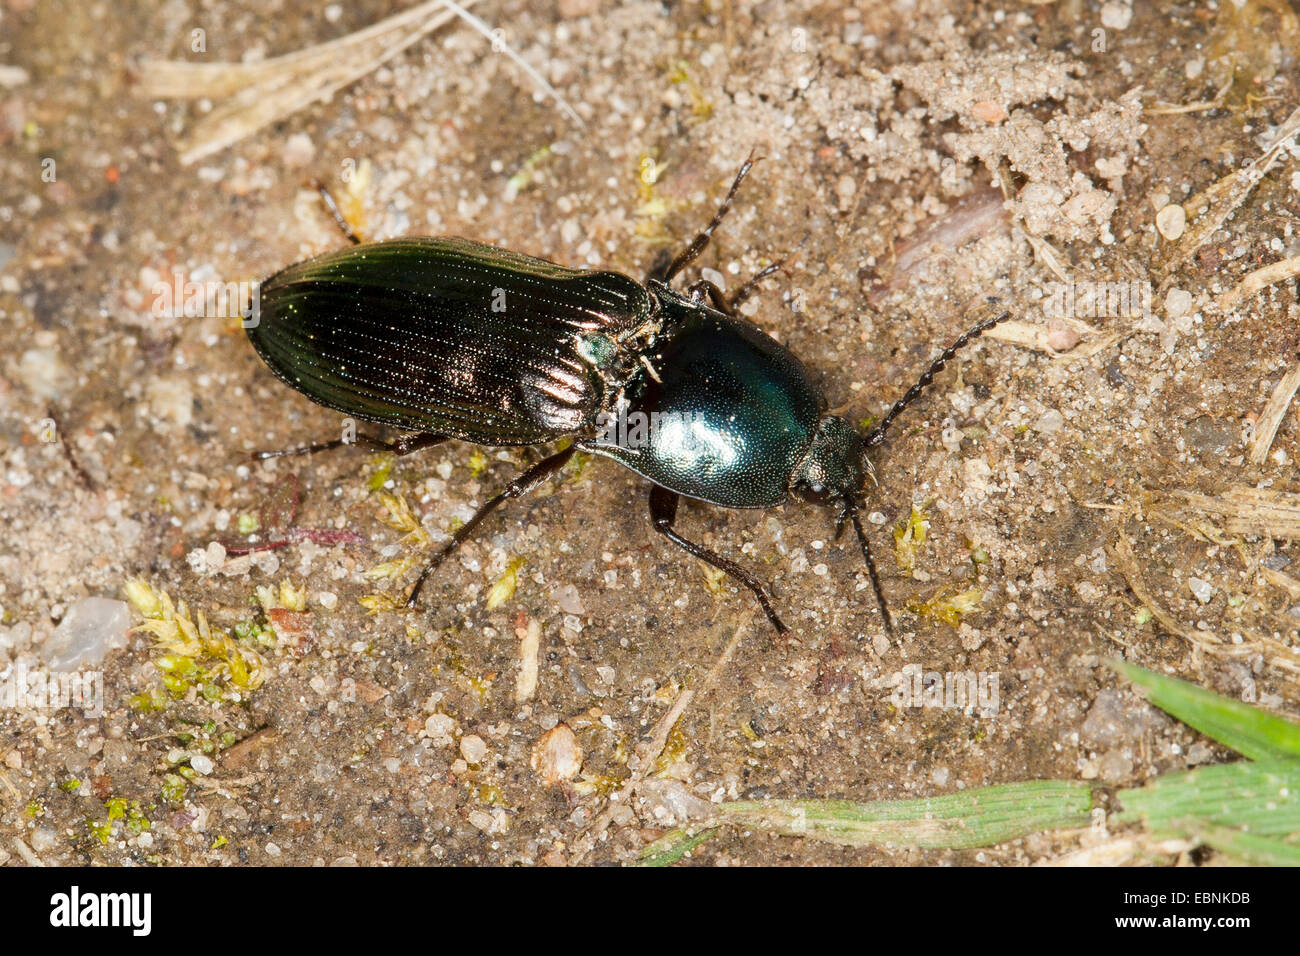 Shiny click beetle (Selatosomus aeneus), on the ground, Germany Stock Photo